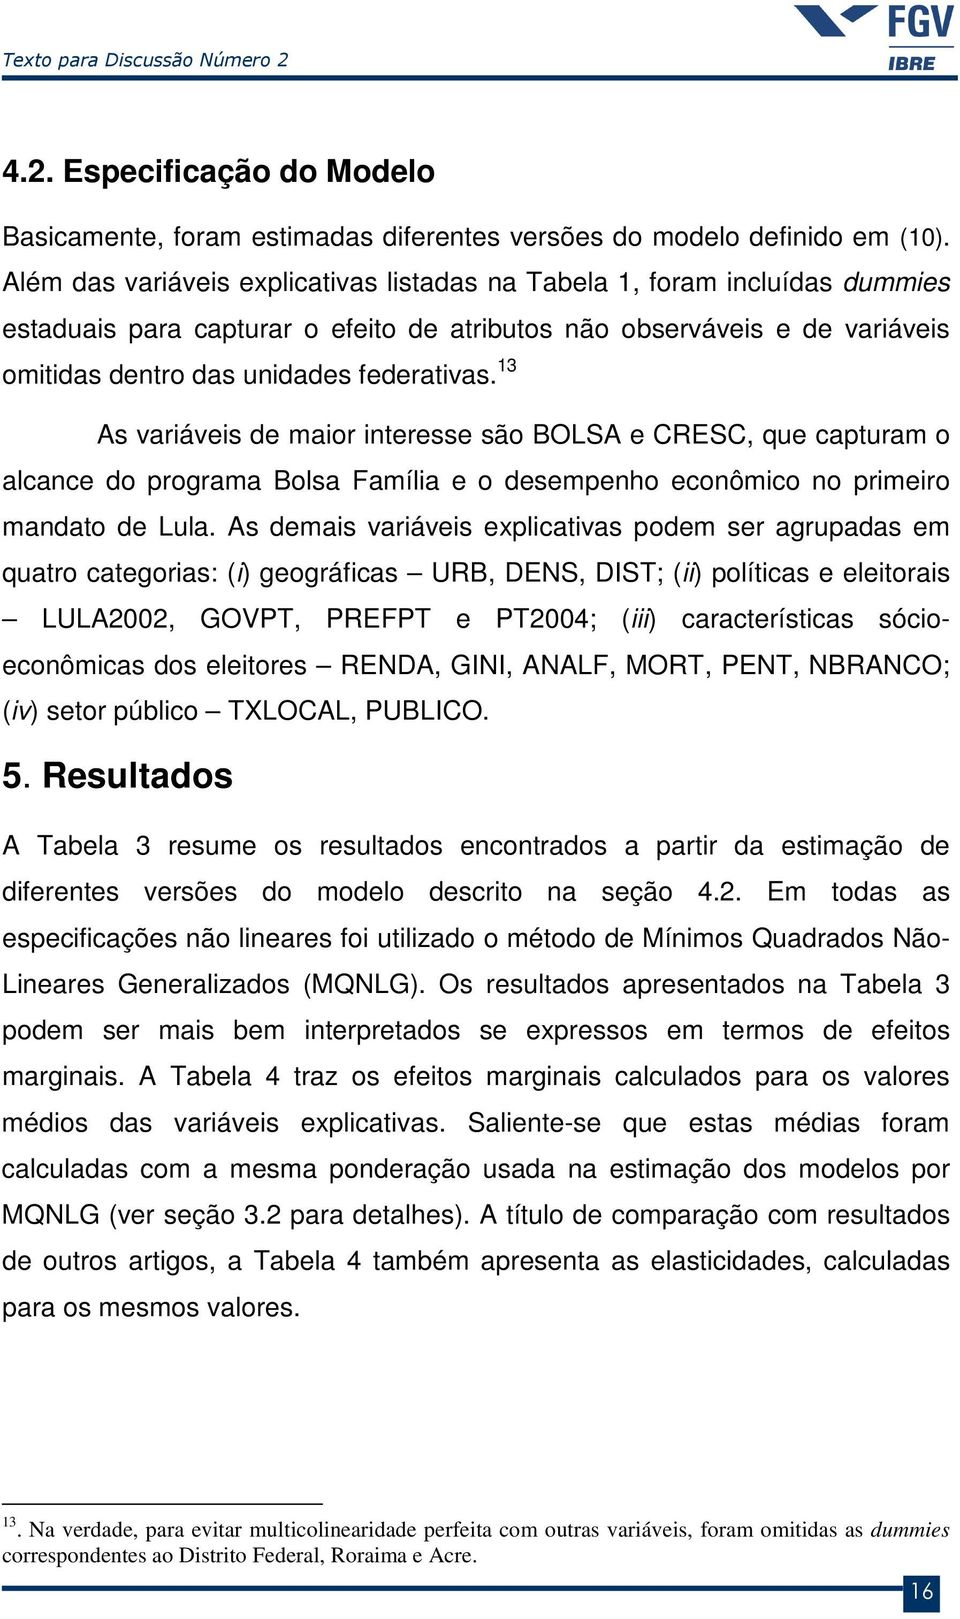 13 A variávei de maior interee ão BOLSA e CRESC, que capturam o alcance do programa Bola Família e o deempenho econômico no primeiro mandato de Lula.